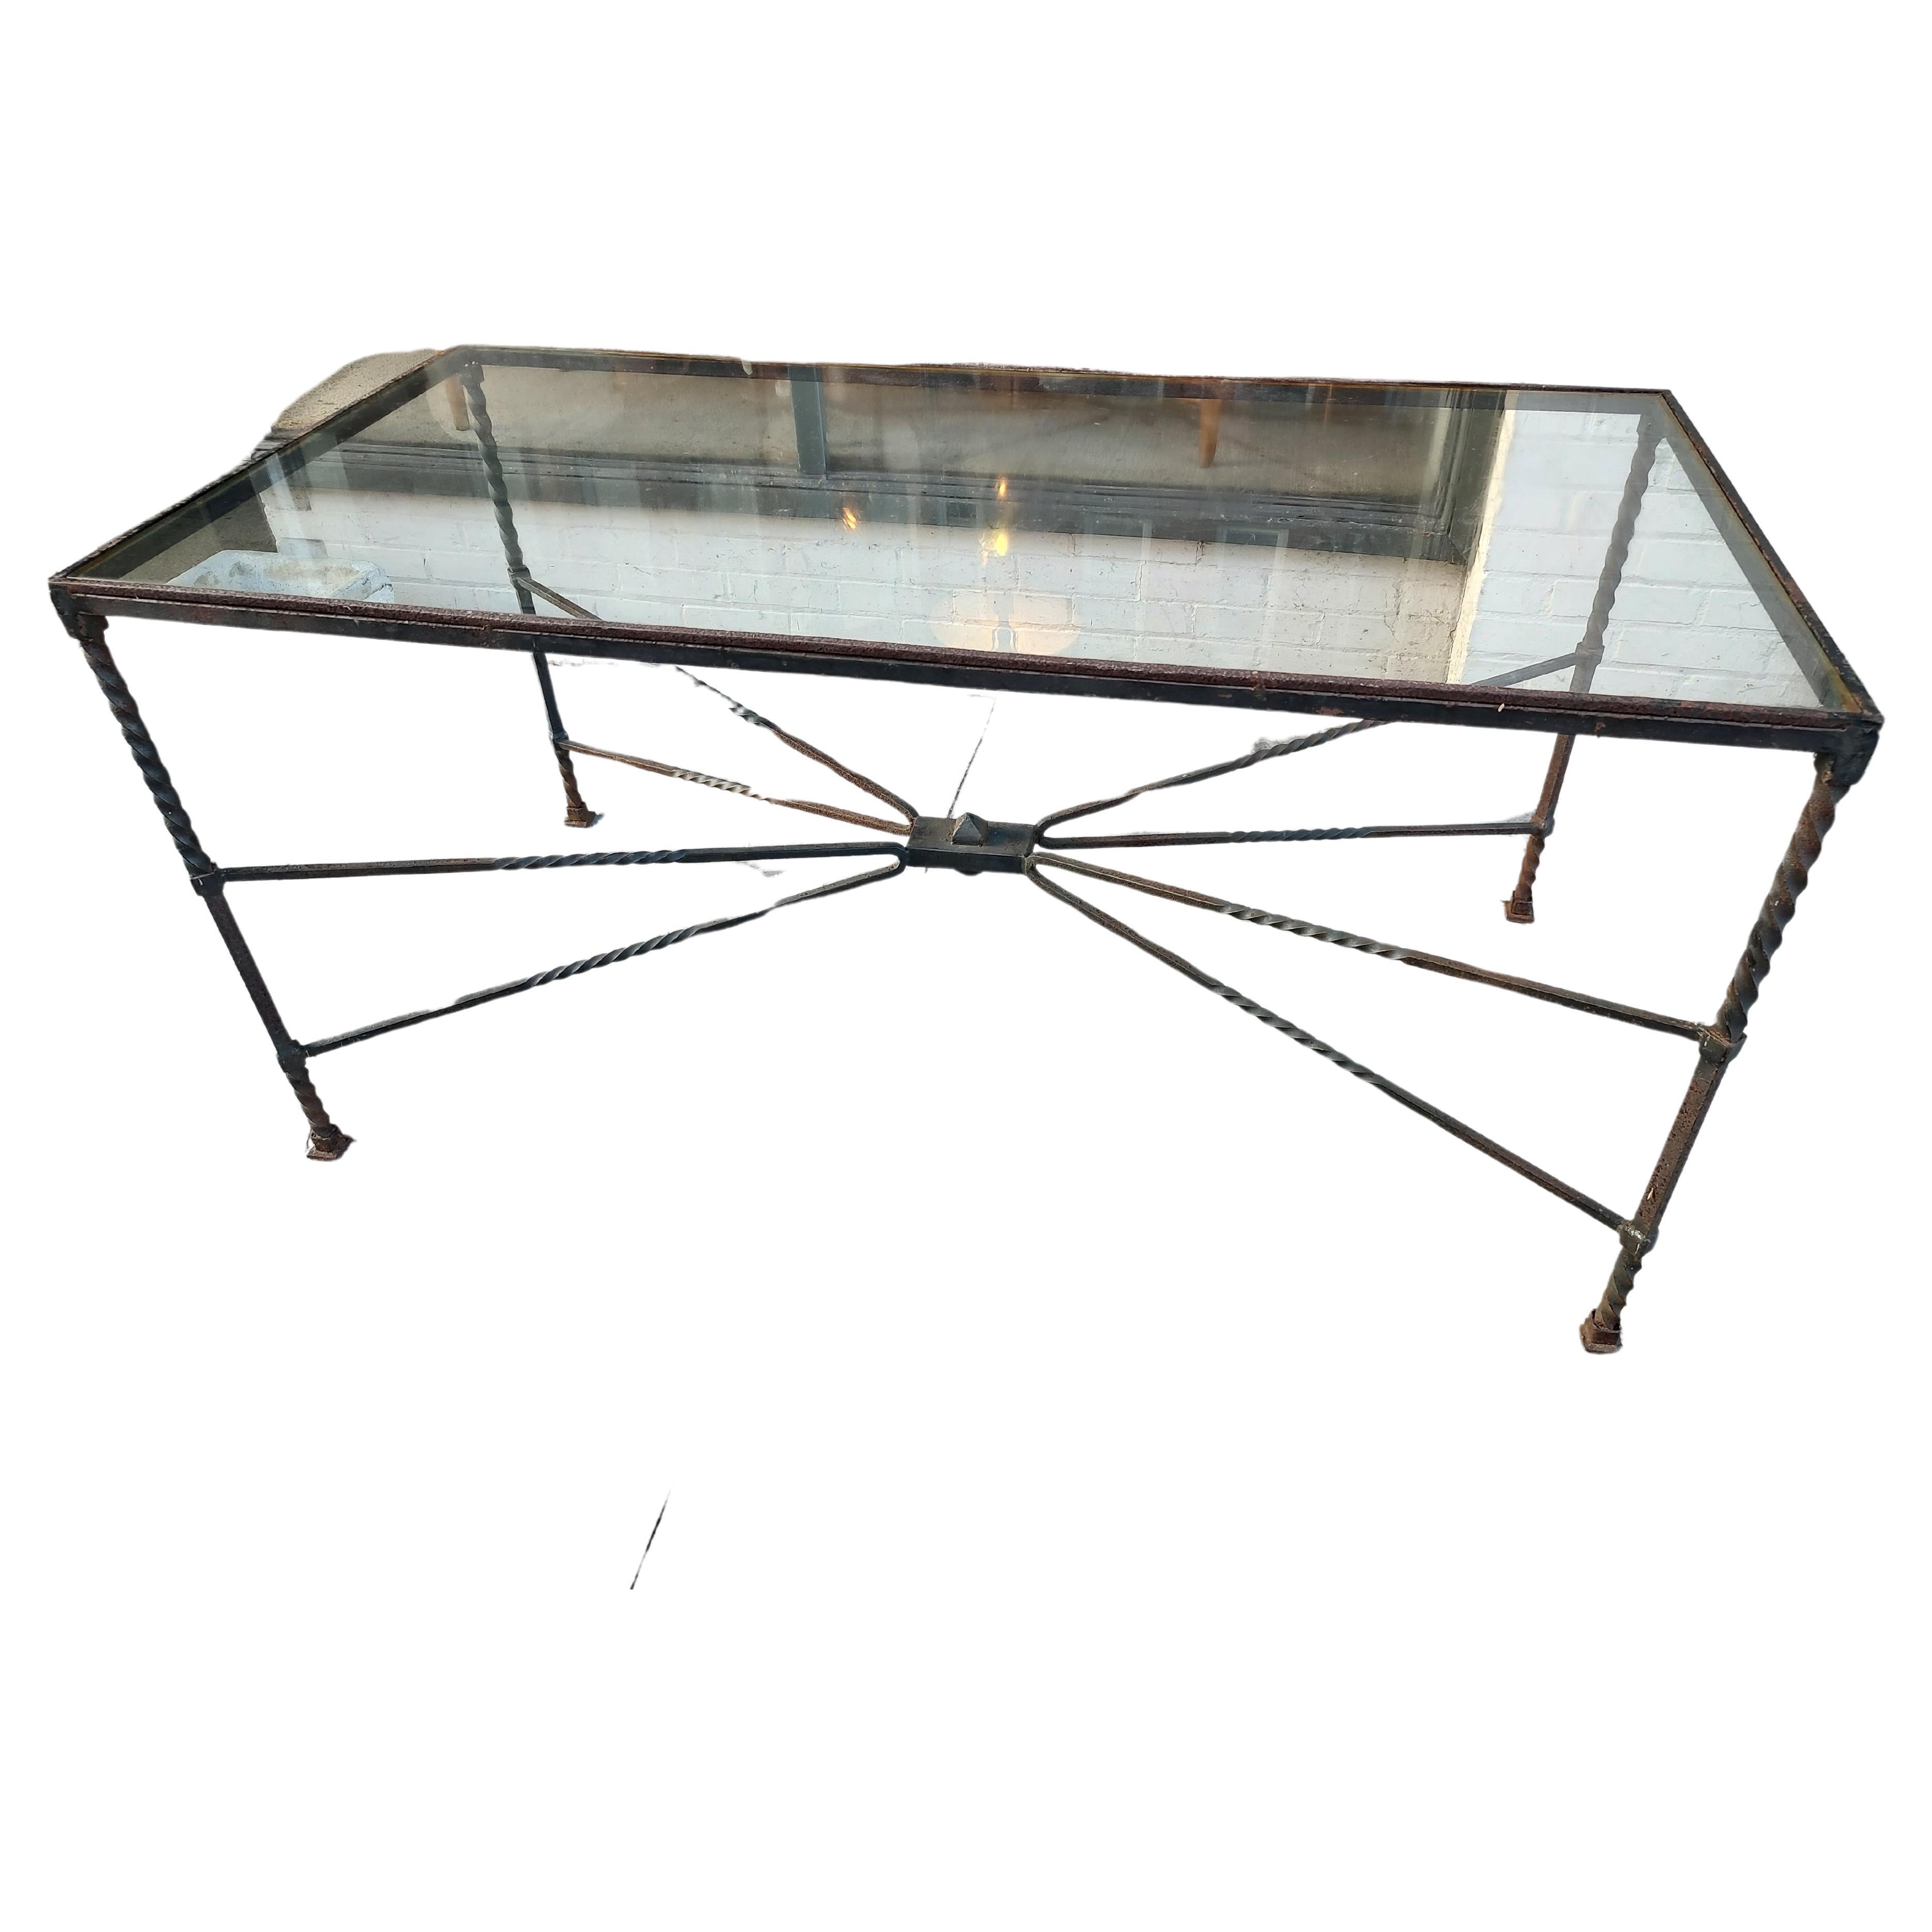 Table sculpturale moderne du milieu du siècle dernier, en fer forgé à la main avec plateau en verre